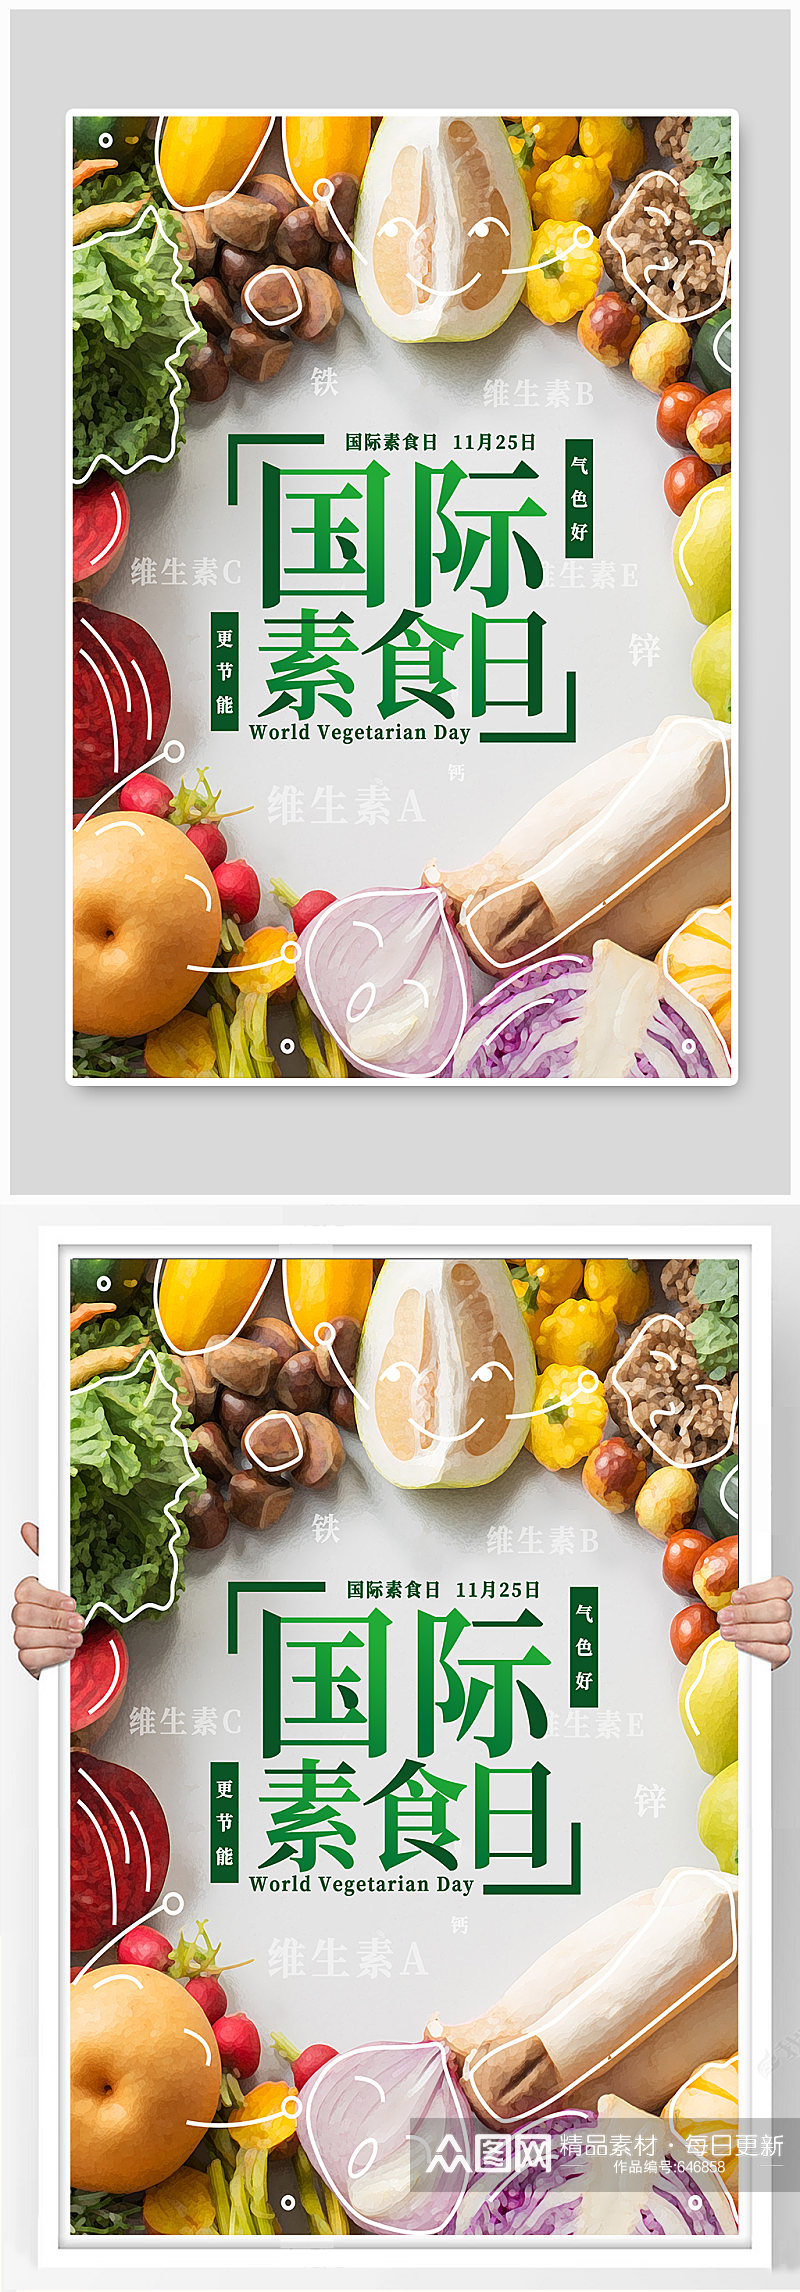 国际素食日节日宣传海报素材